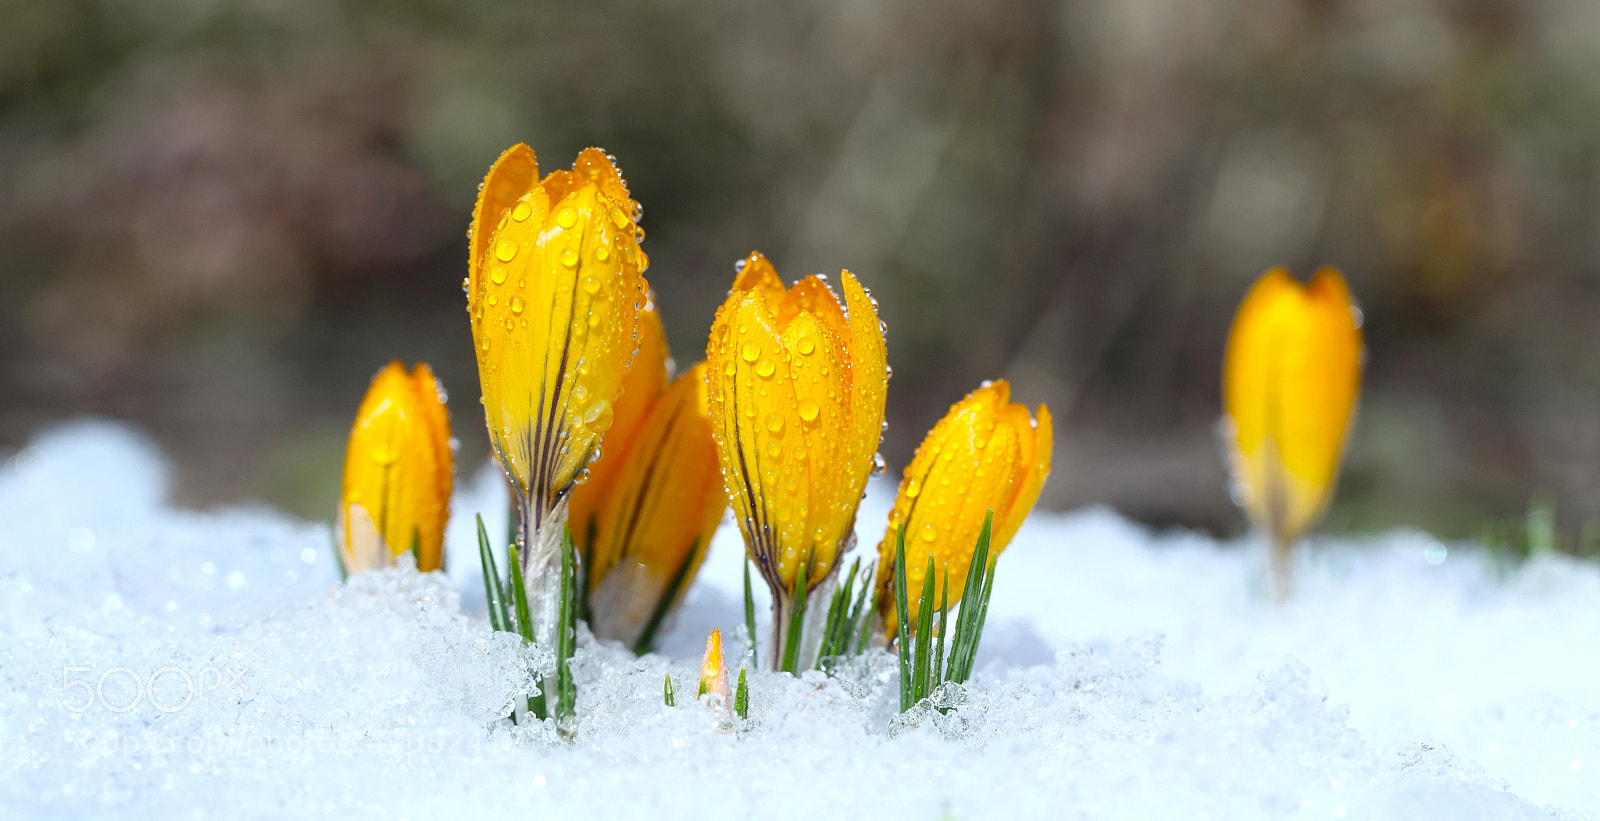 Canon EOS 5D Mark II sample photo. Flowers grow under snow photography